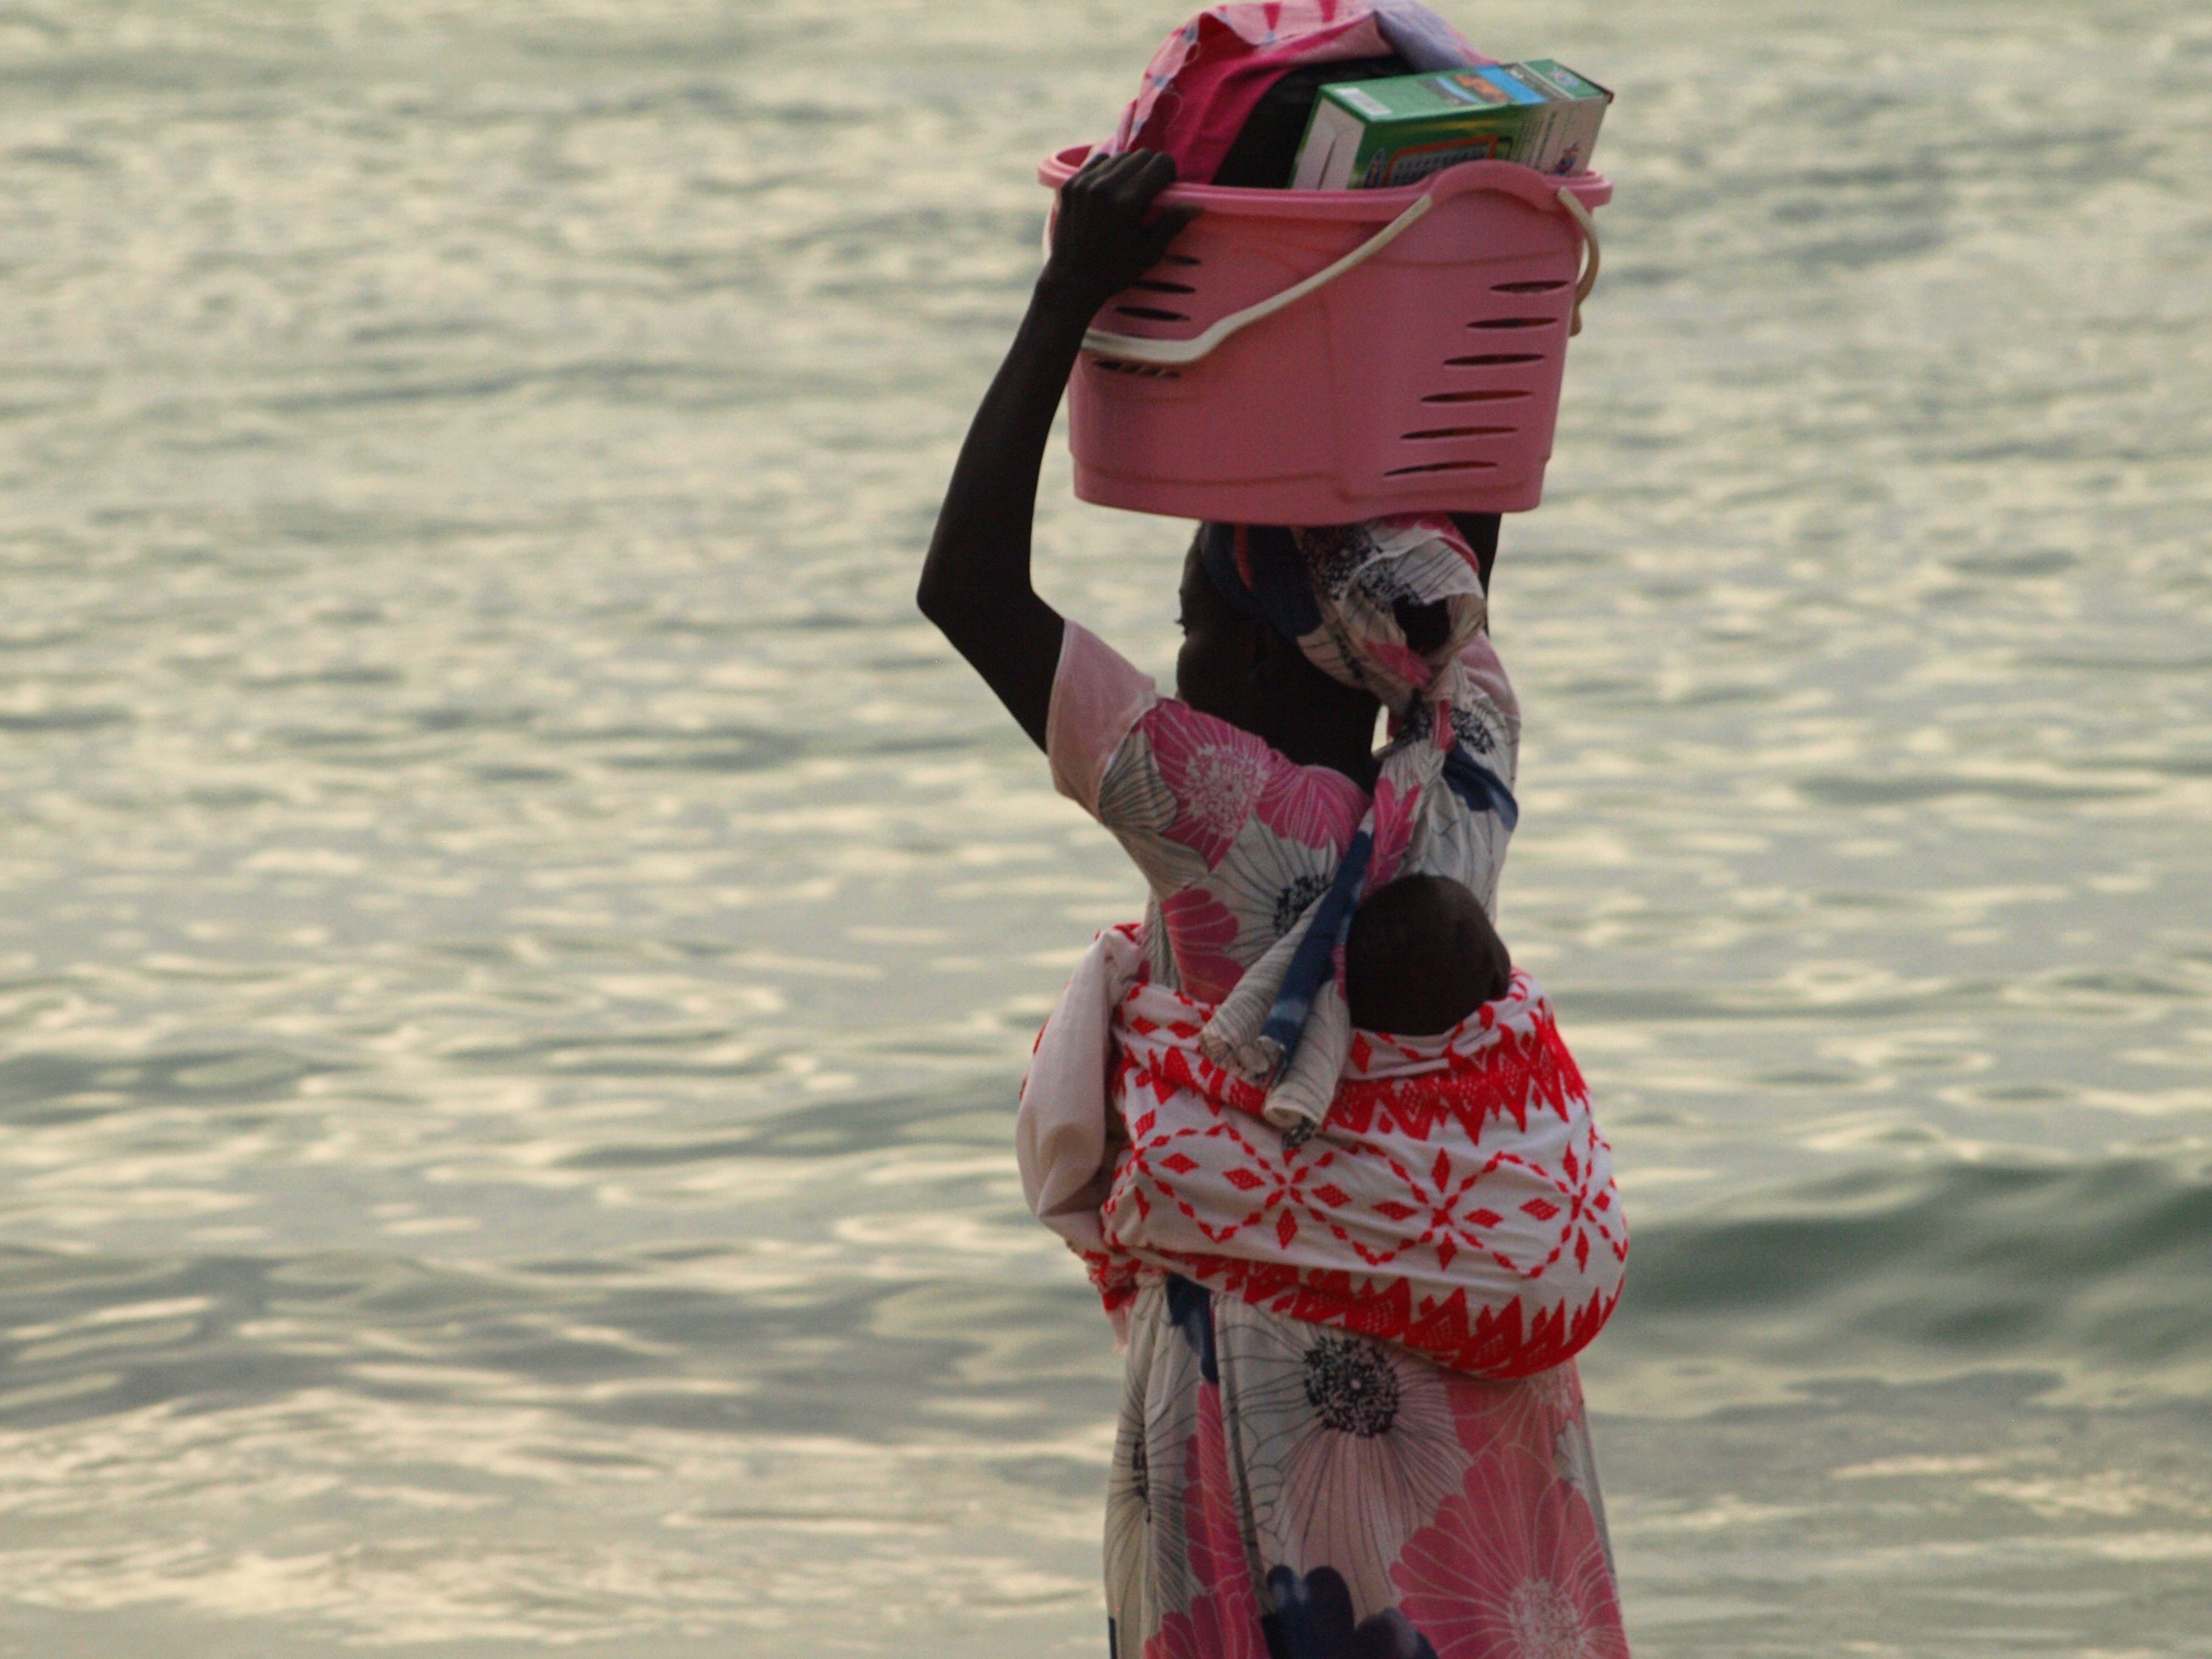 El Delta del Saloom, un viaje de aventura por Senegal y Gambia en 9 días (1 parte)